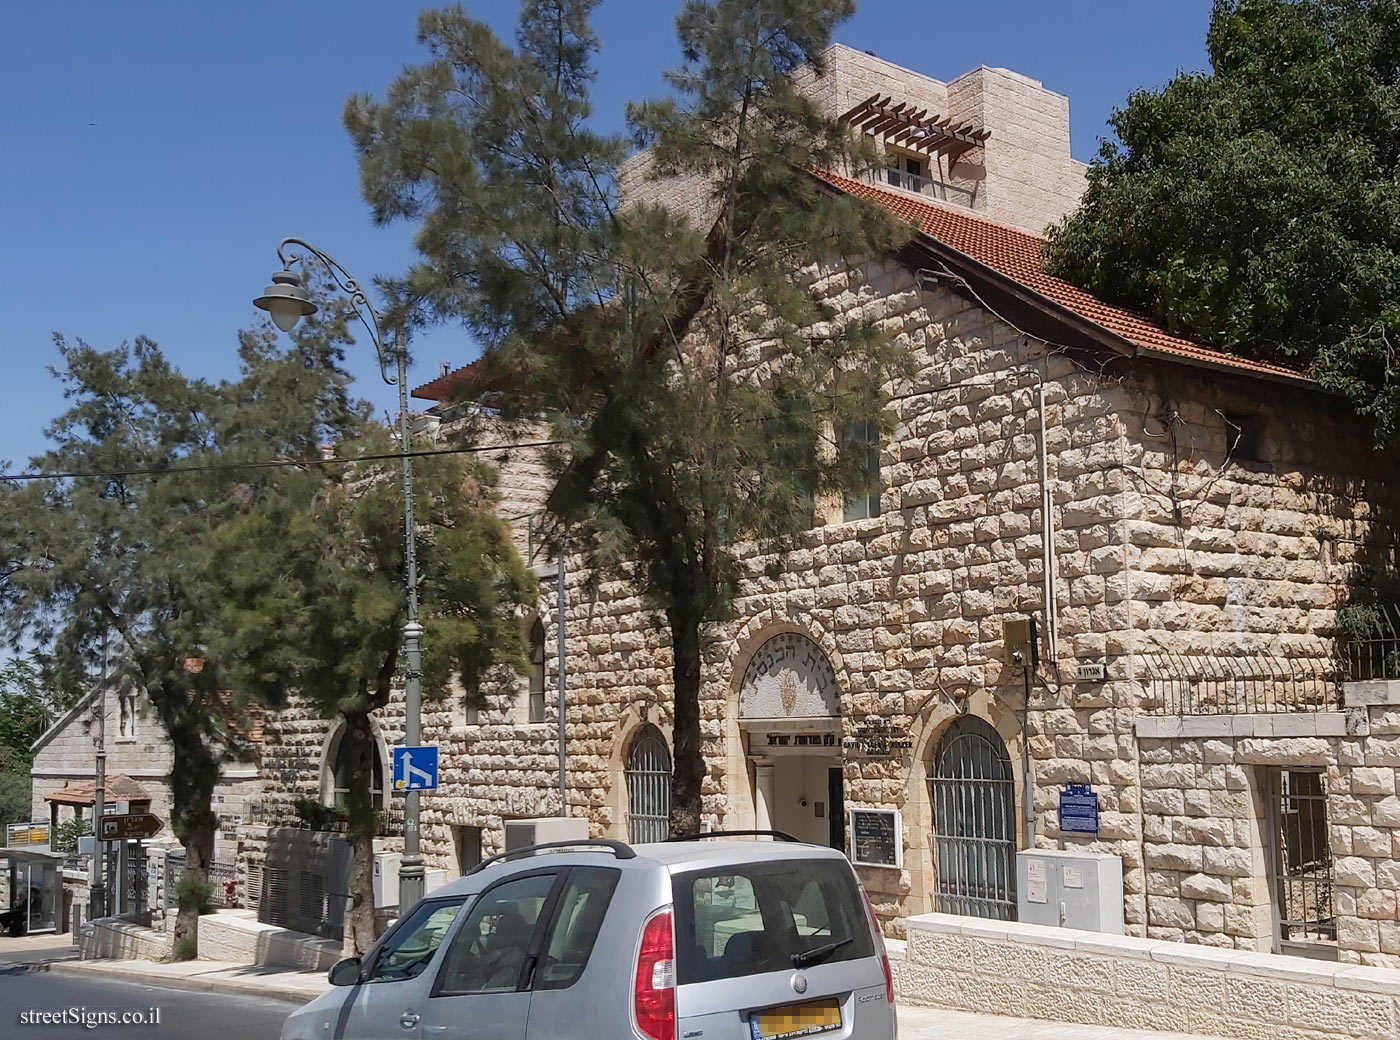 Jerusalem - Heritage Sites in Israel - Fuchsberg Center for Conservative Judaism - Gershon Agron St 4, Jerusalem, Israel